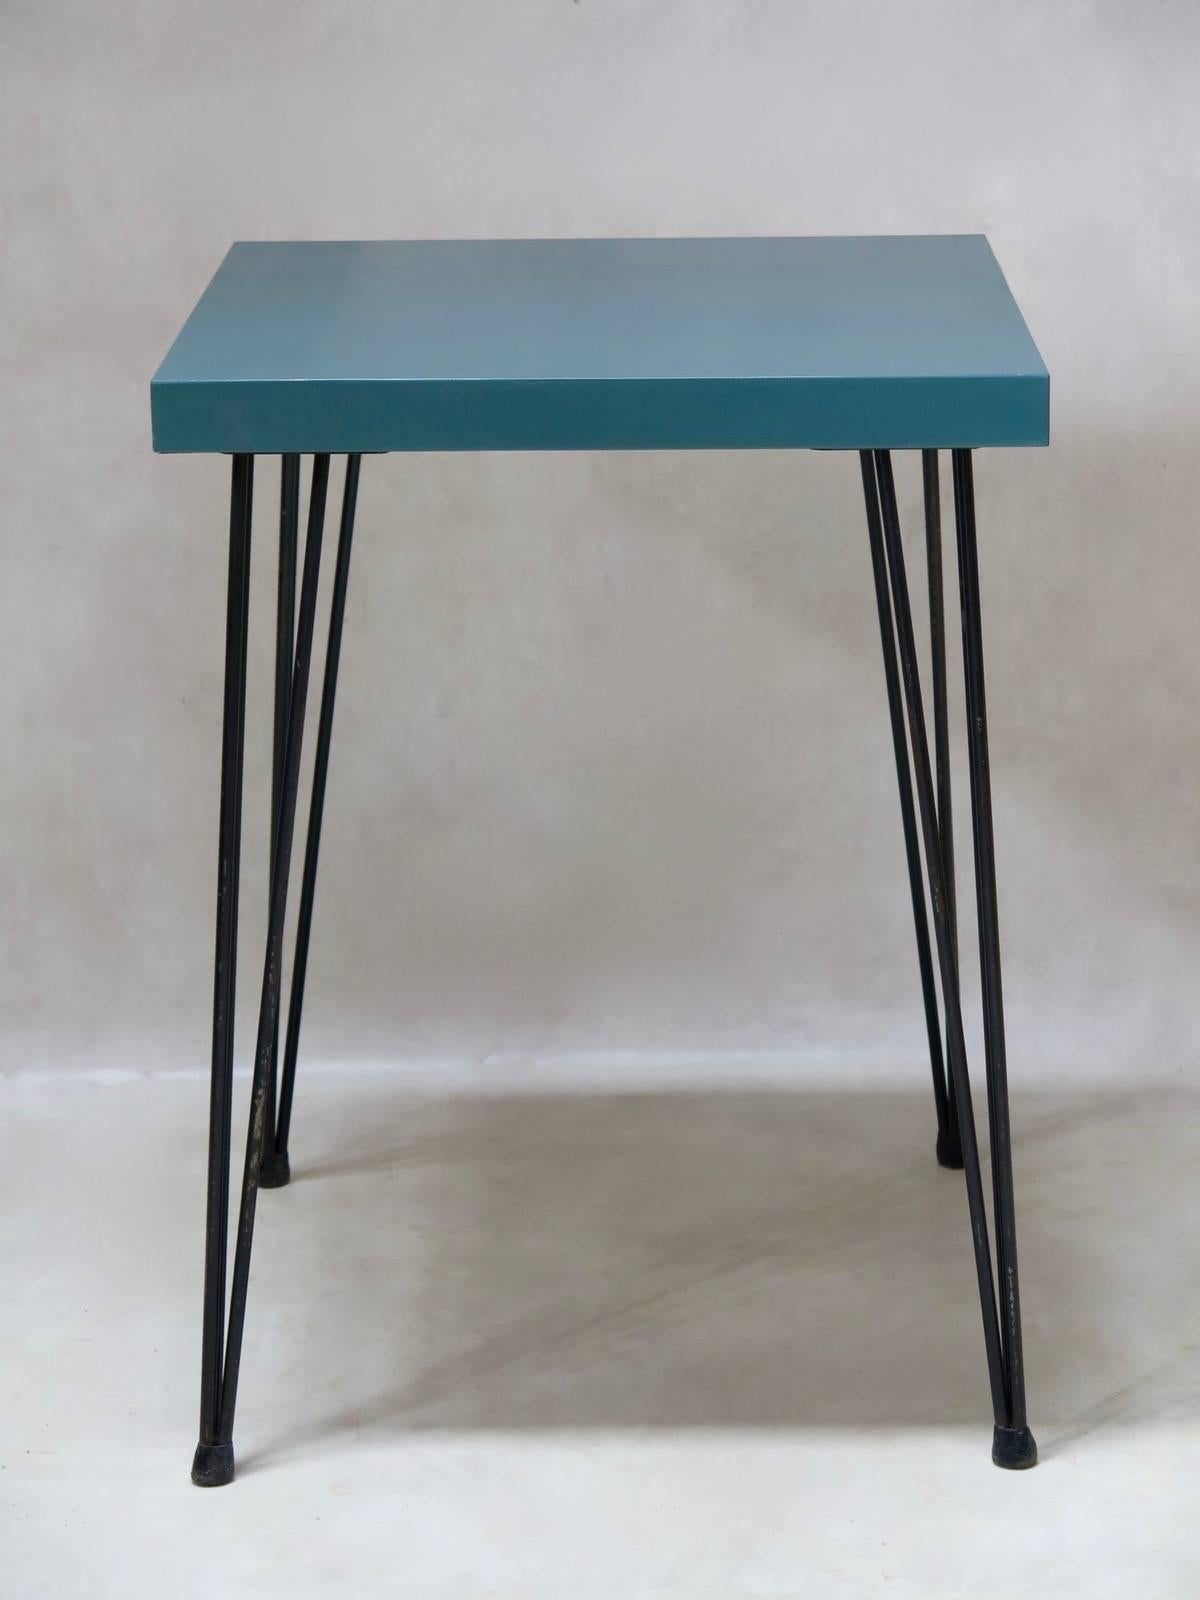 Hübsch gestaltete, eher kleine, quadratische Tische mit lackierten Sperrholzplatten, die auf gespreizten und konisch zulaufenden schwarzen Metallbeinen stehen.

8 verfügbar.